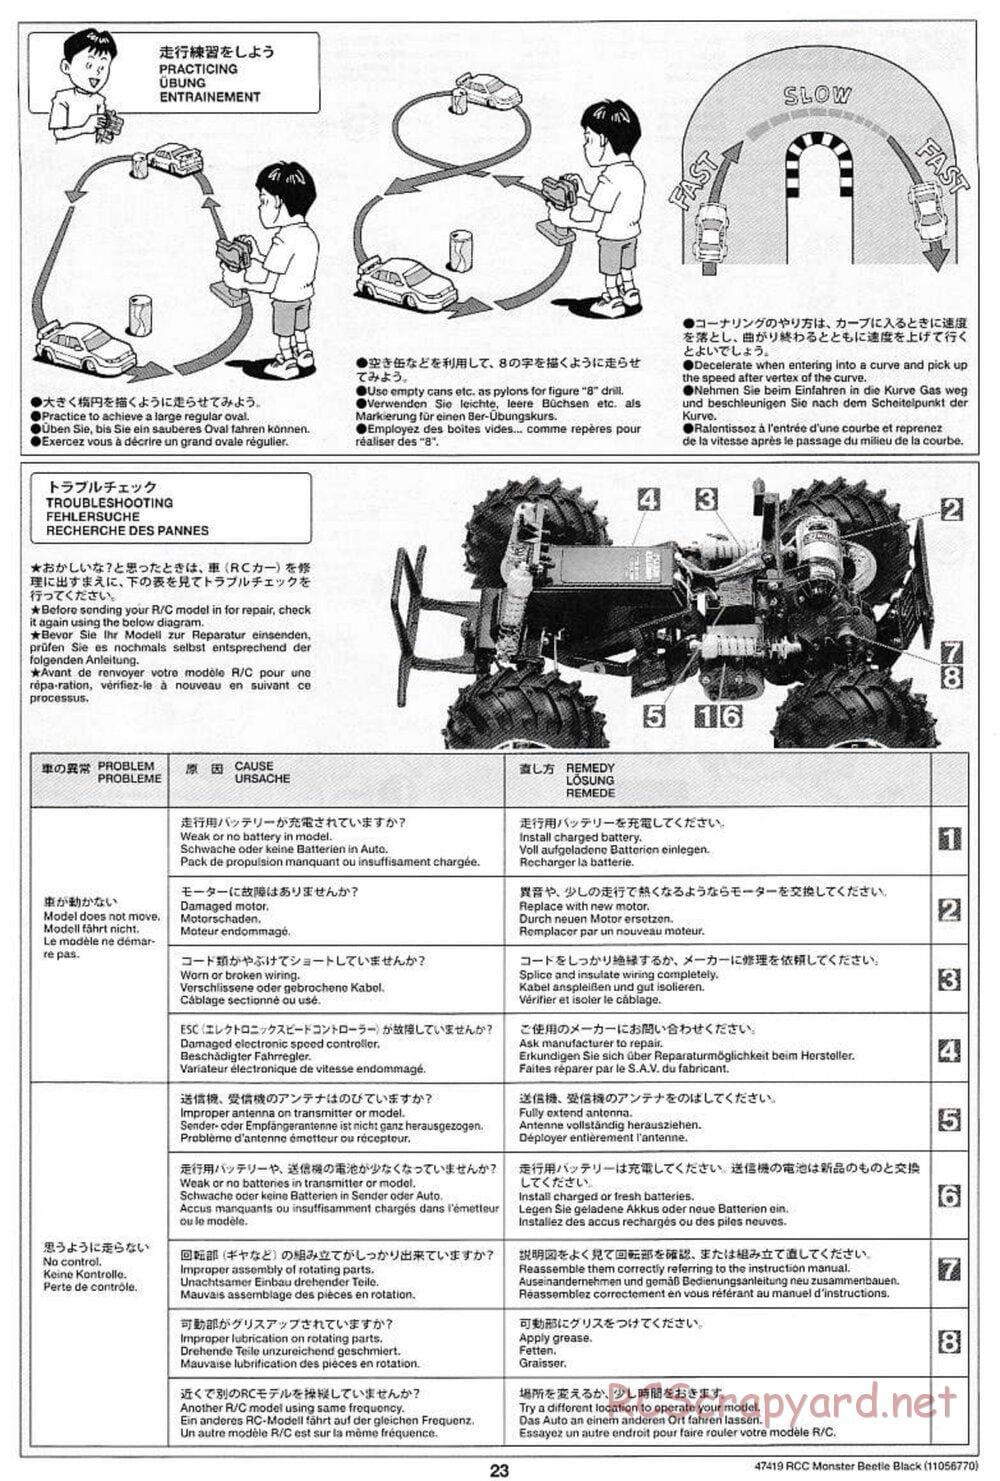 Tamiya - Monster Beetle Black Edition - ORV Chassis - Manual - Page 23